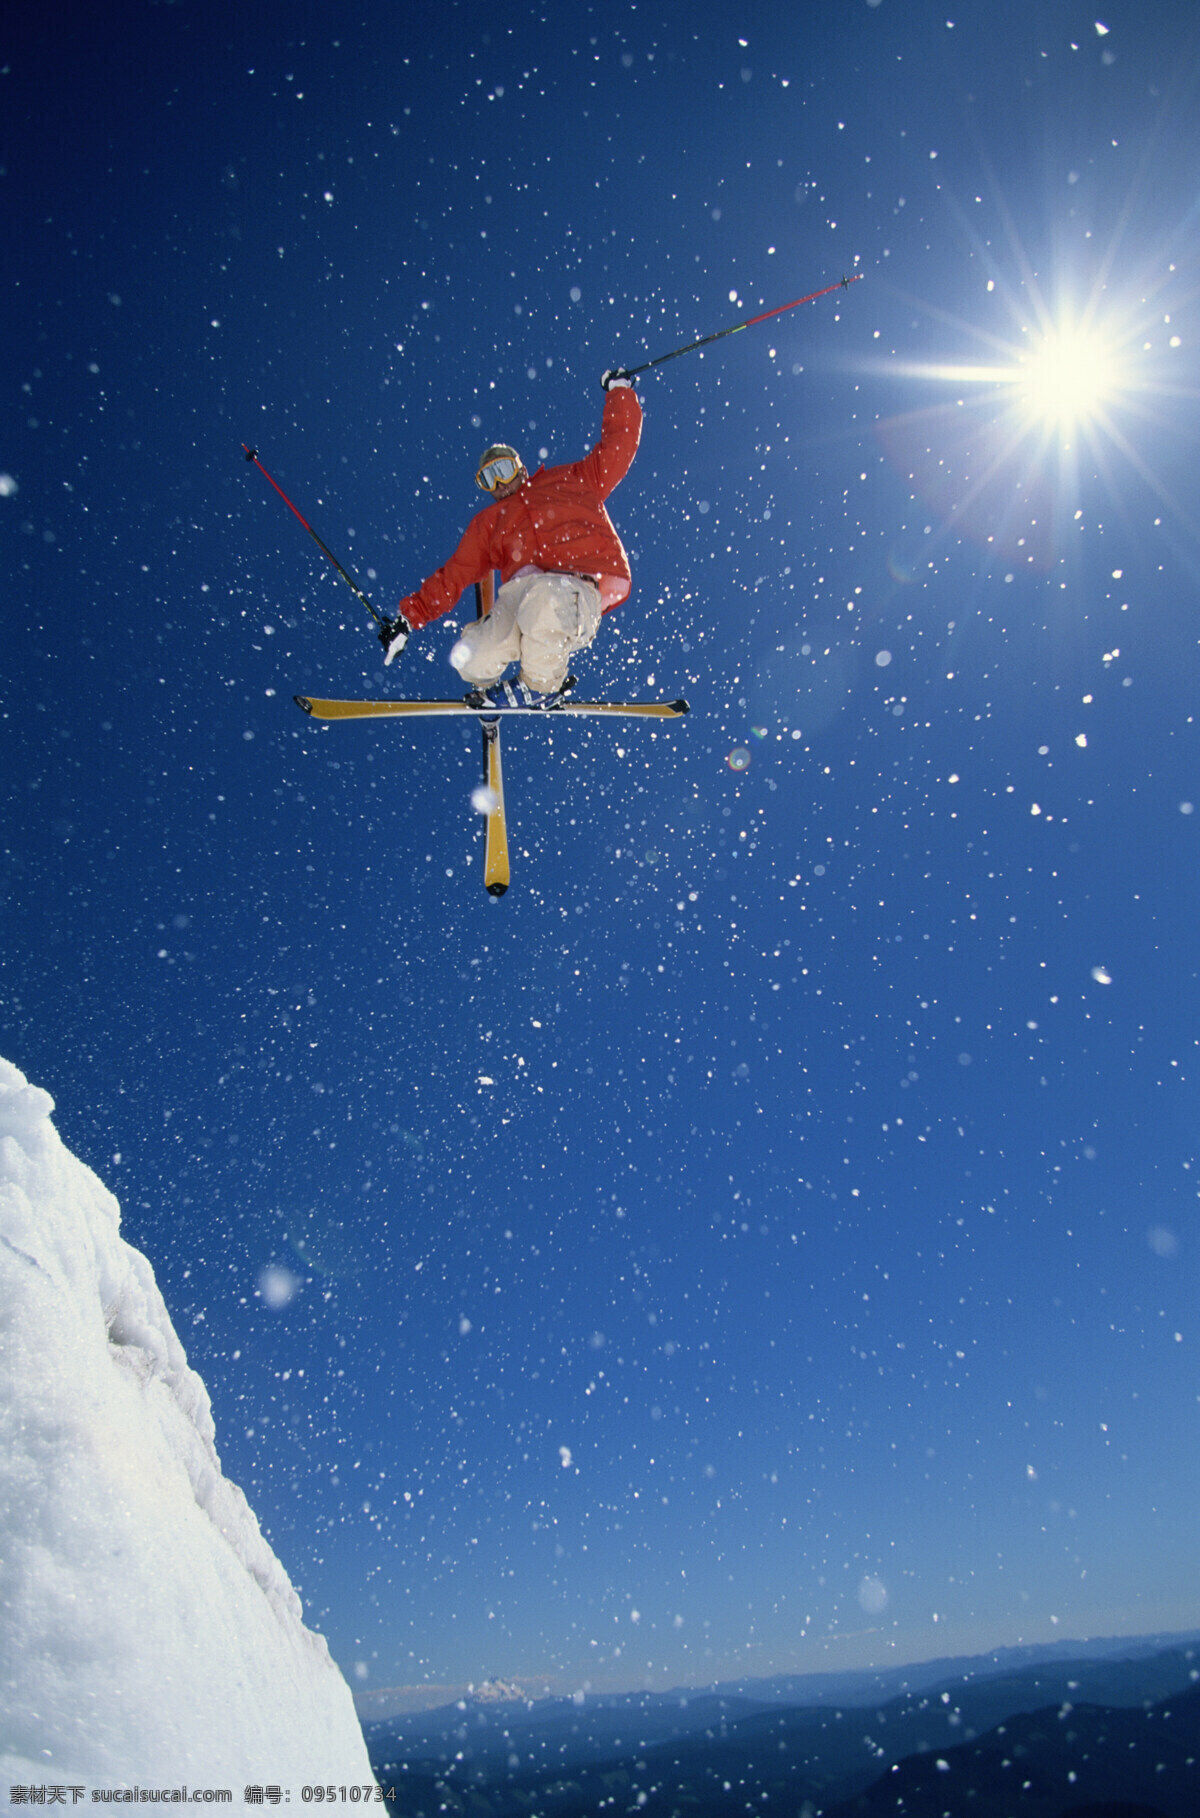 滑雪 人物 高清 滑雪运动 体育运动 户外运动 旅游 户外旅游 人物素材 人物摄影 滑雪图片 生活百科